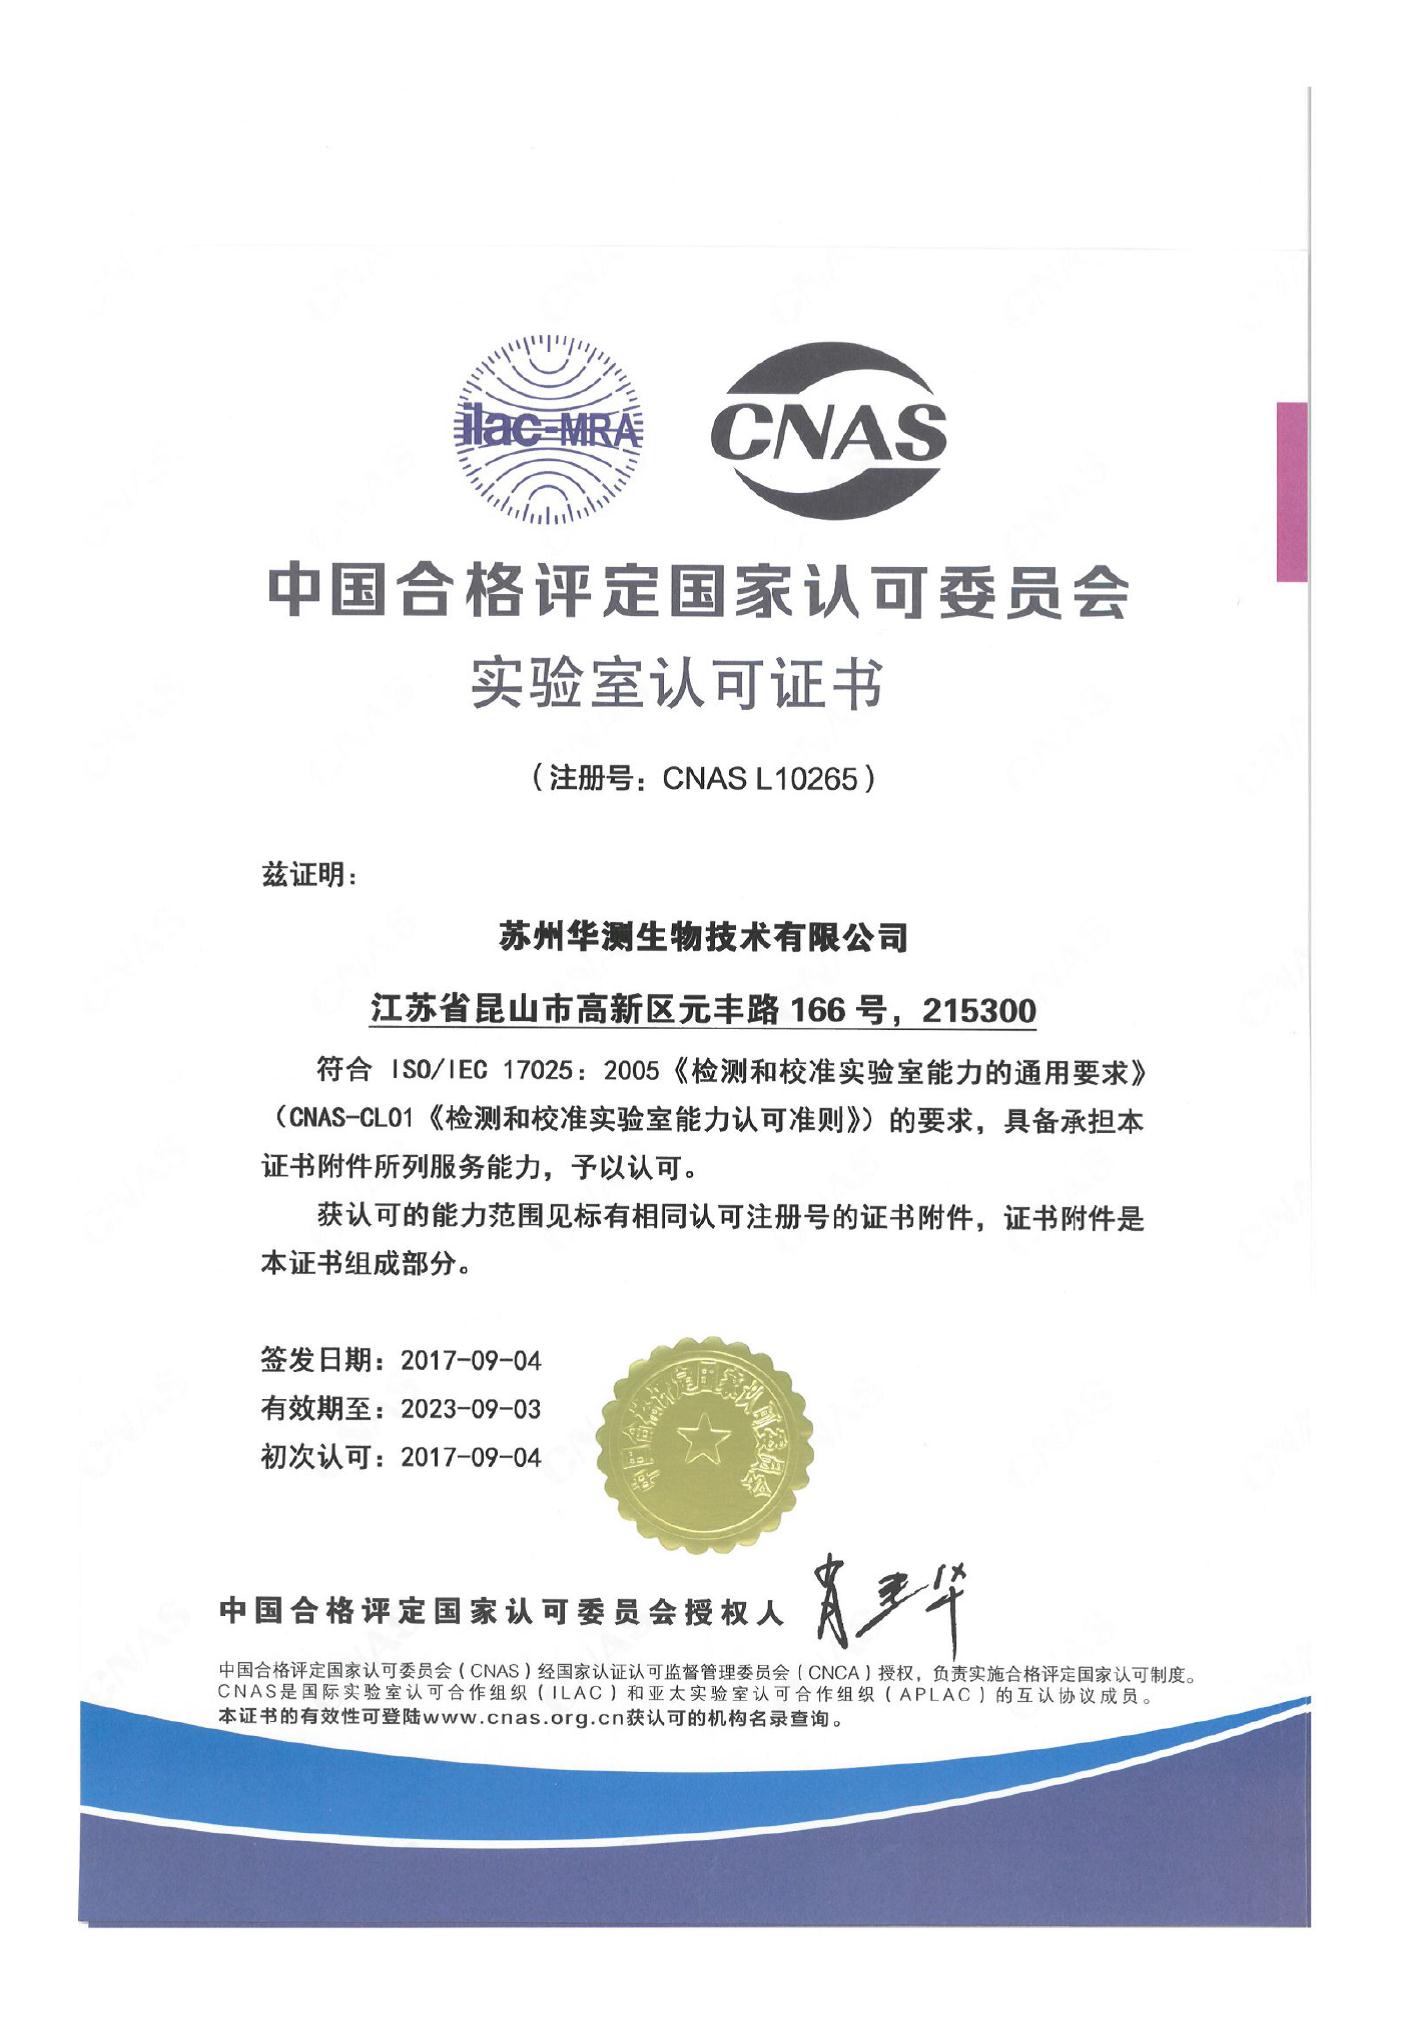 苏州华测生物技术有限公司获CNAS认可